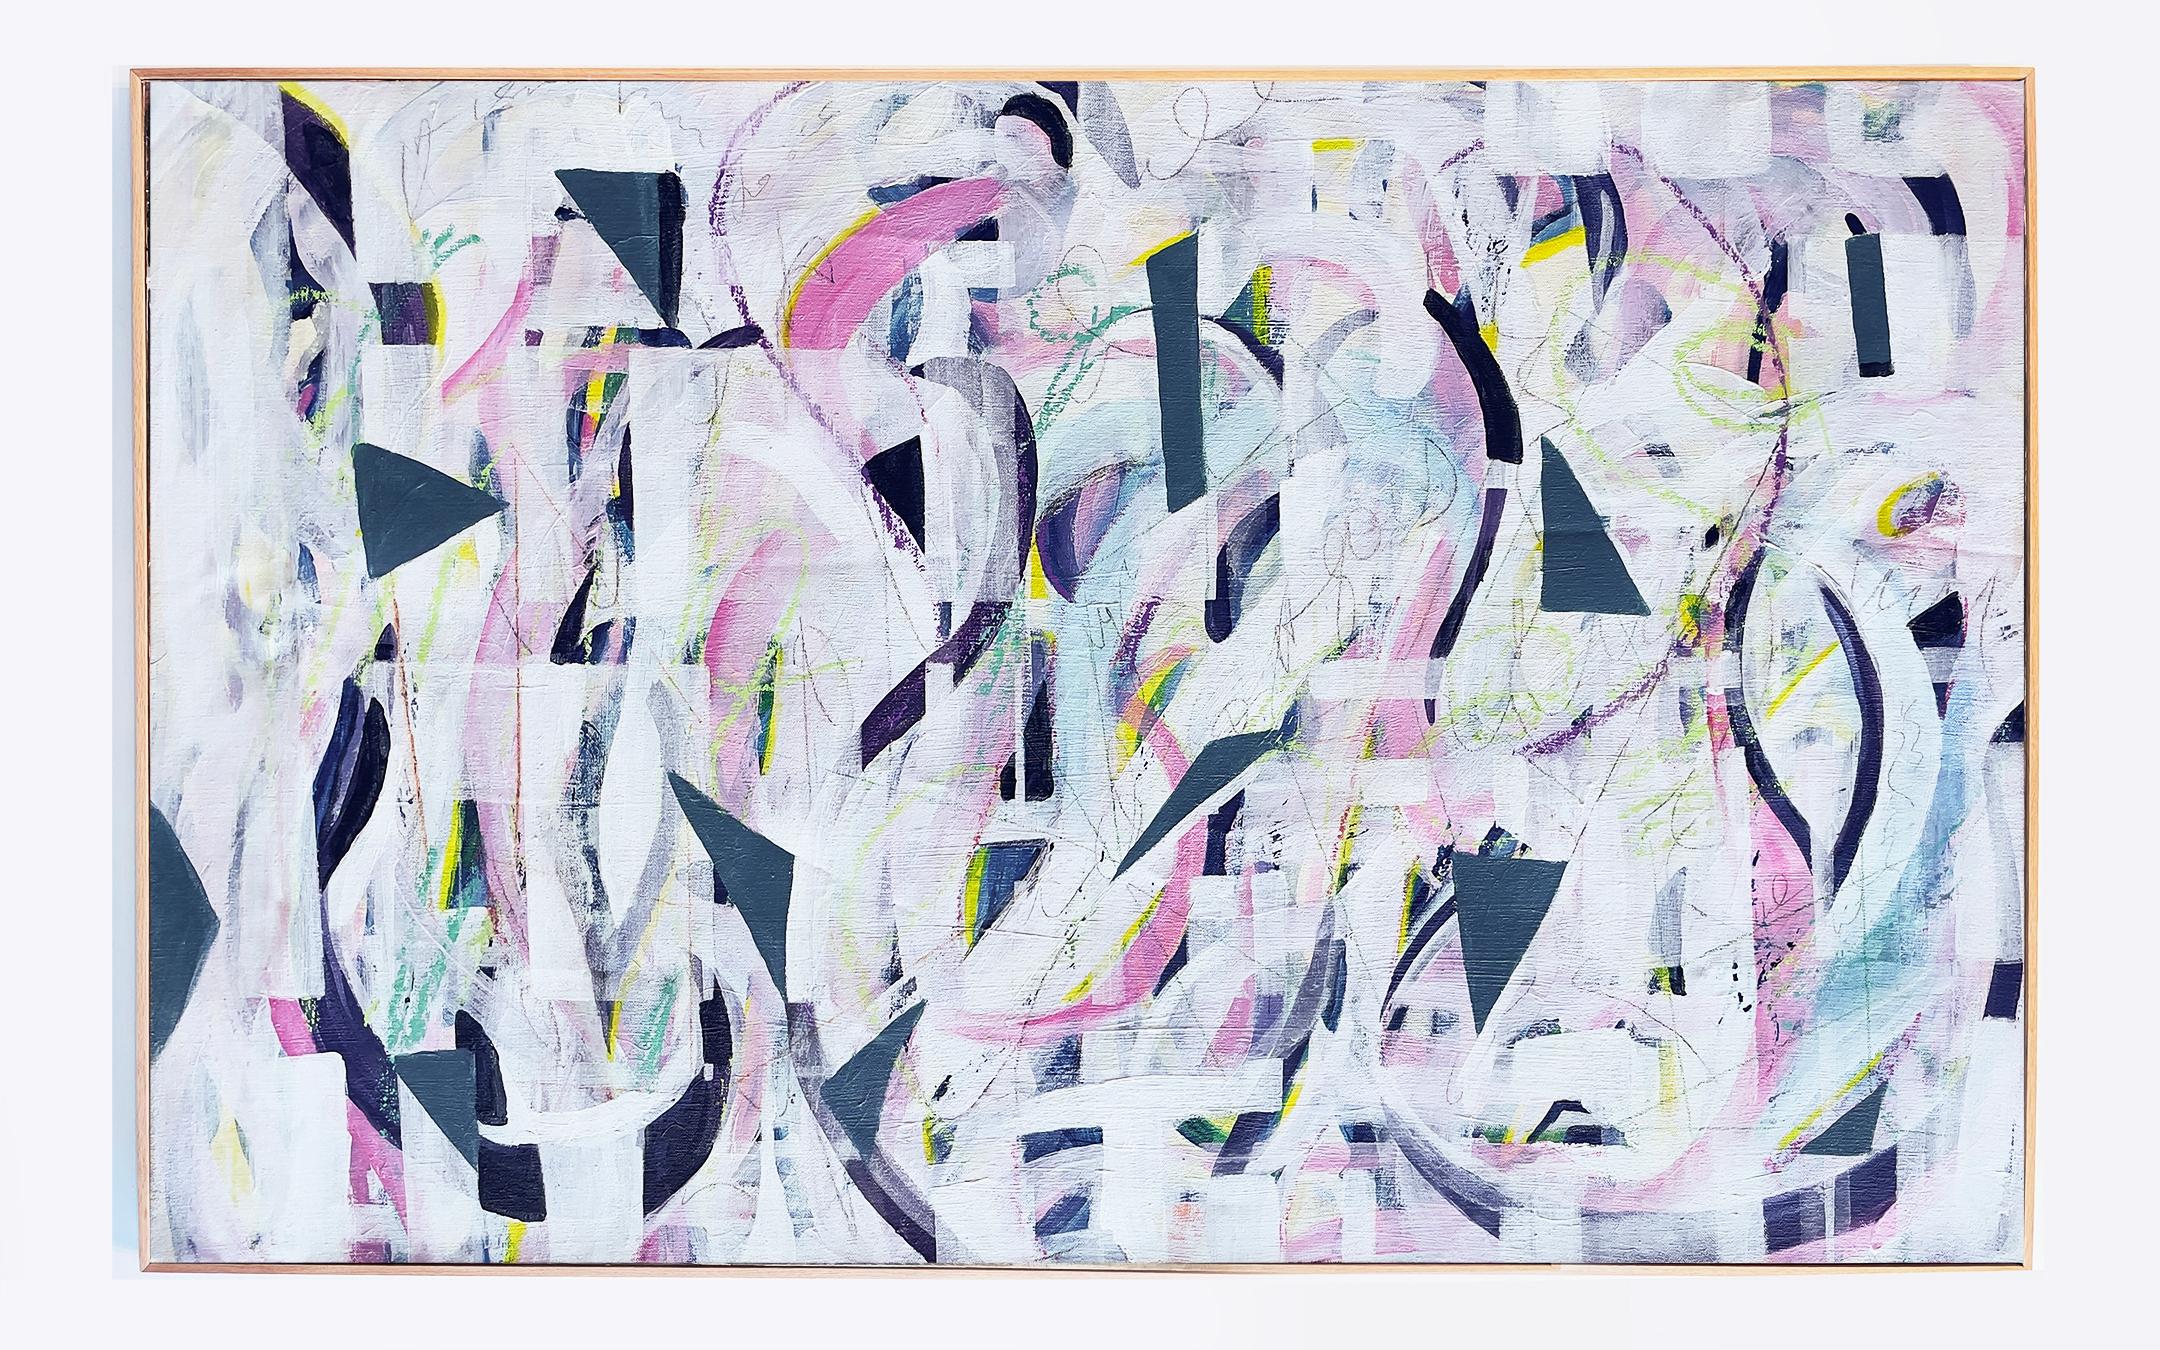 Symphonie in Weiß, Blau und Rosa (Abstrakter Expressionismus), Mixed Media Art, von Bianca Wellwood